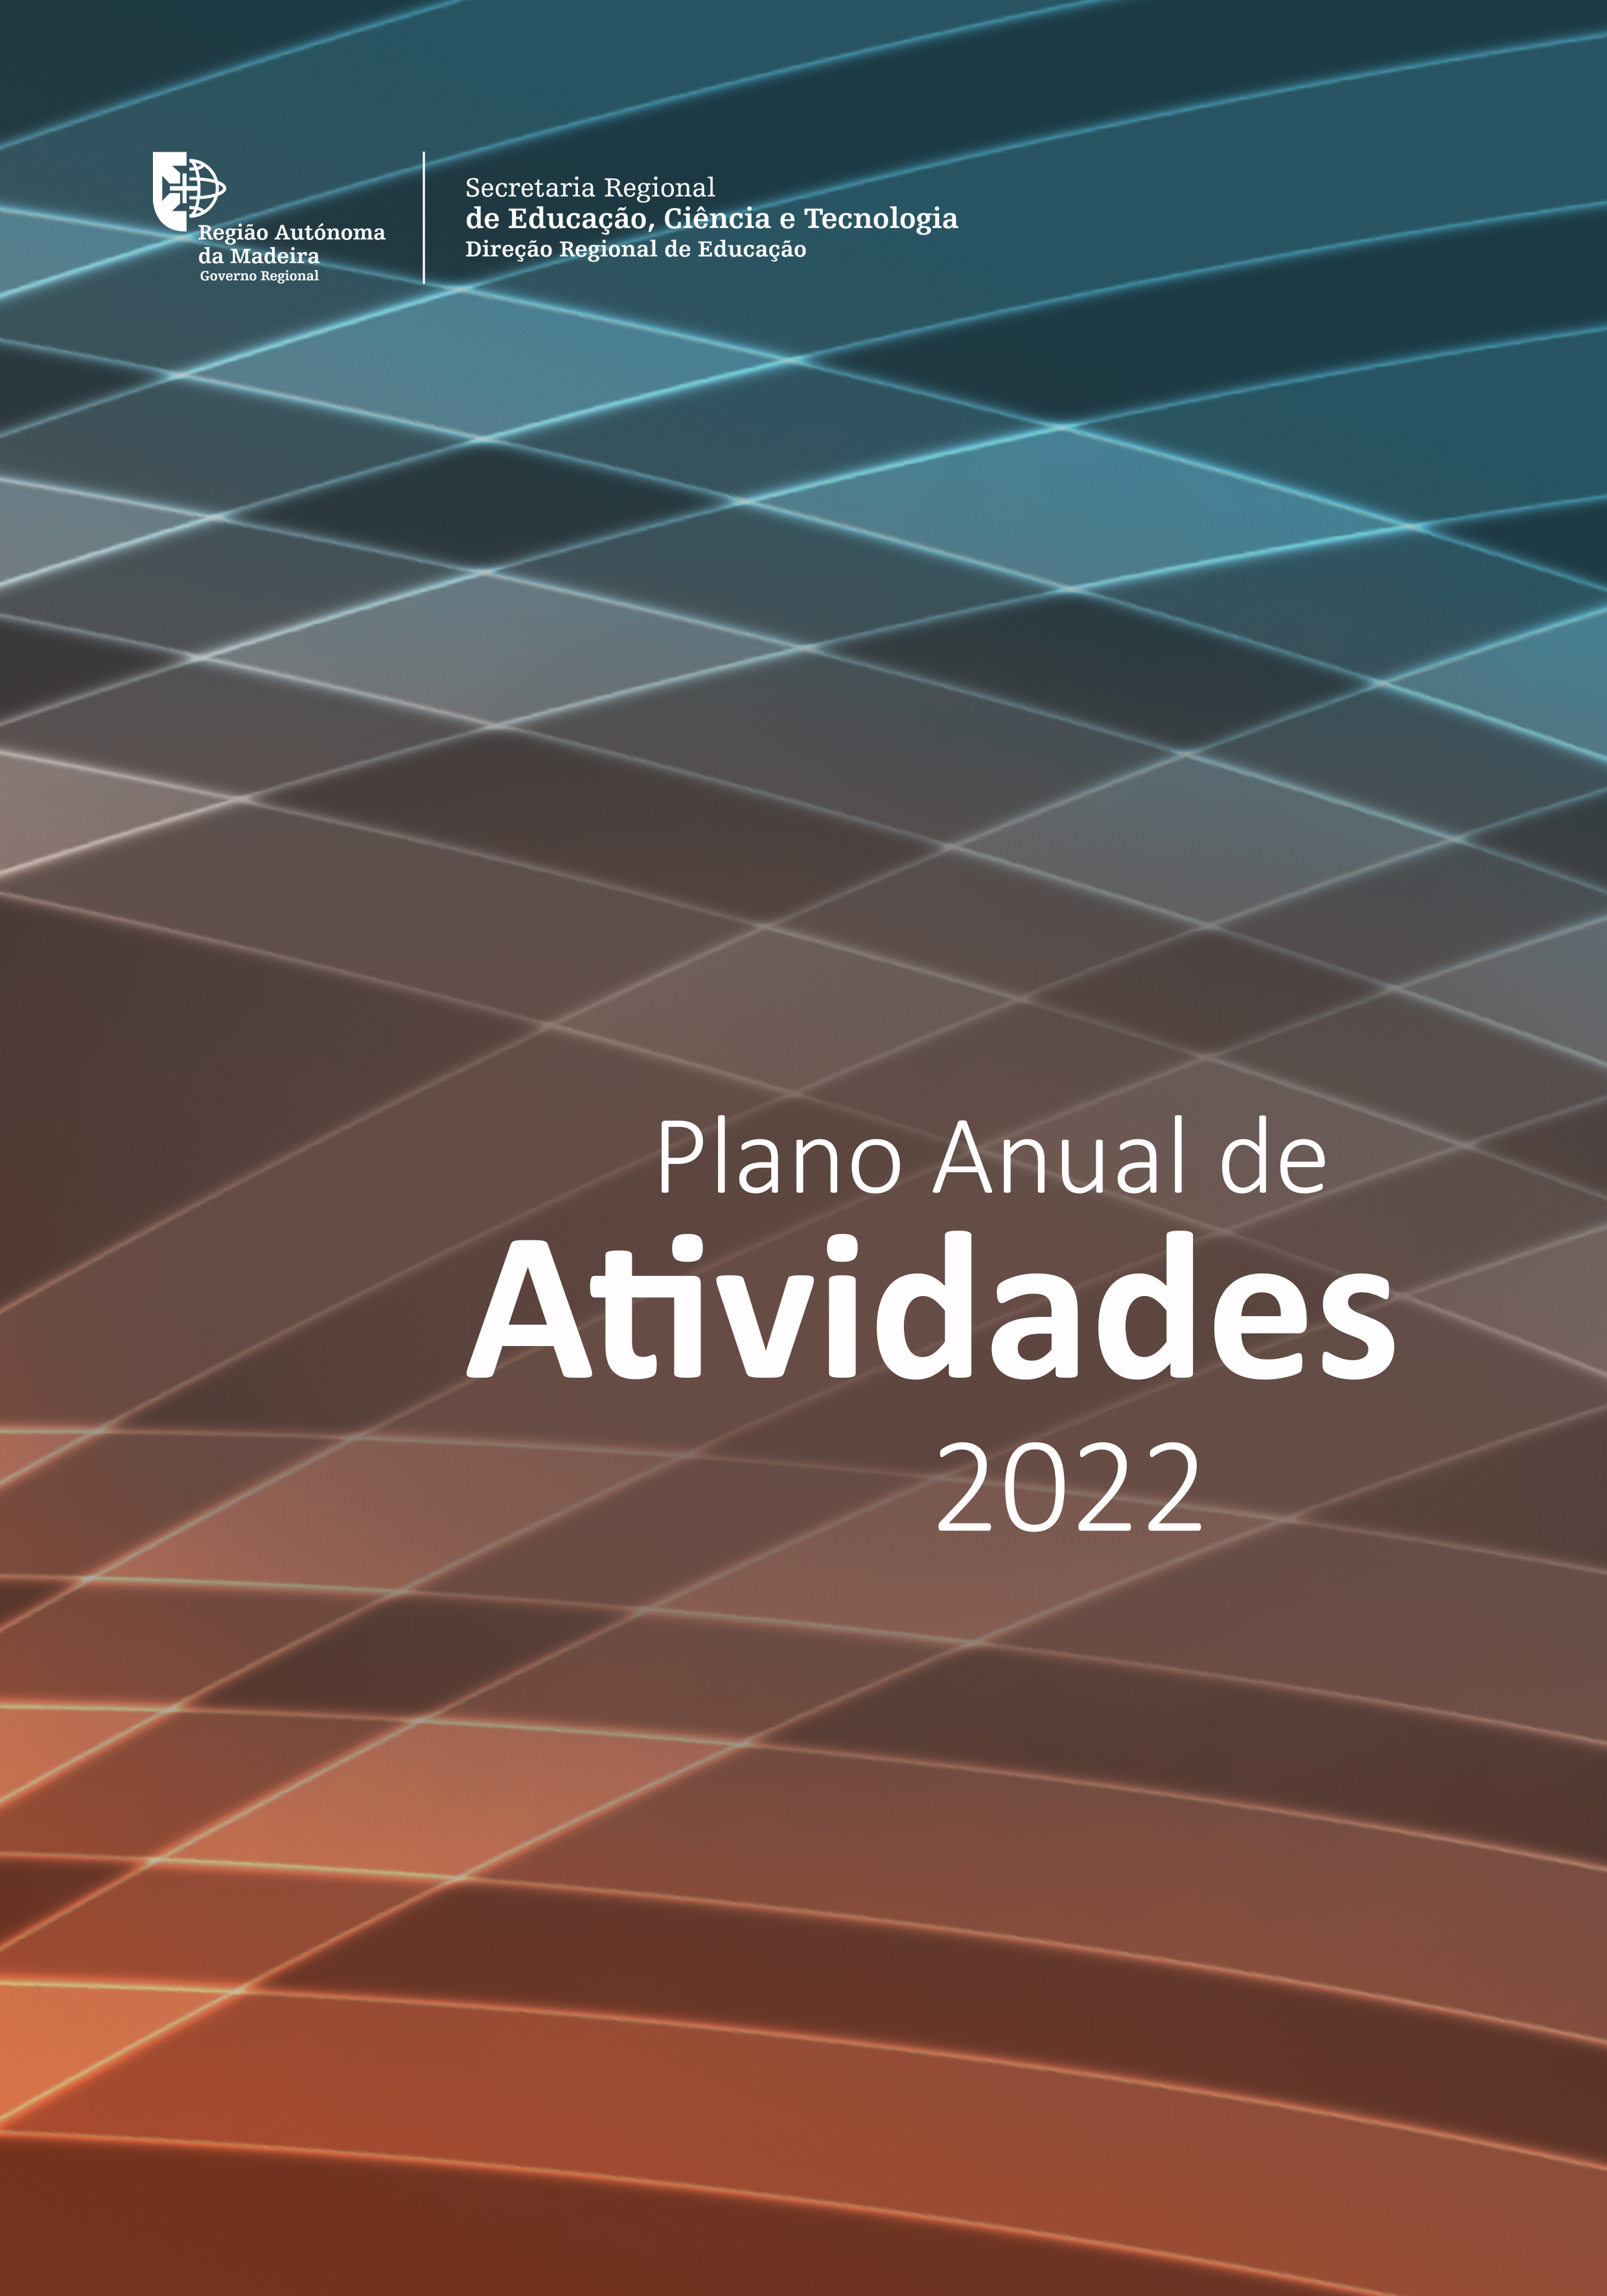 Plano Anual de Atividades DRE 2022